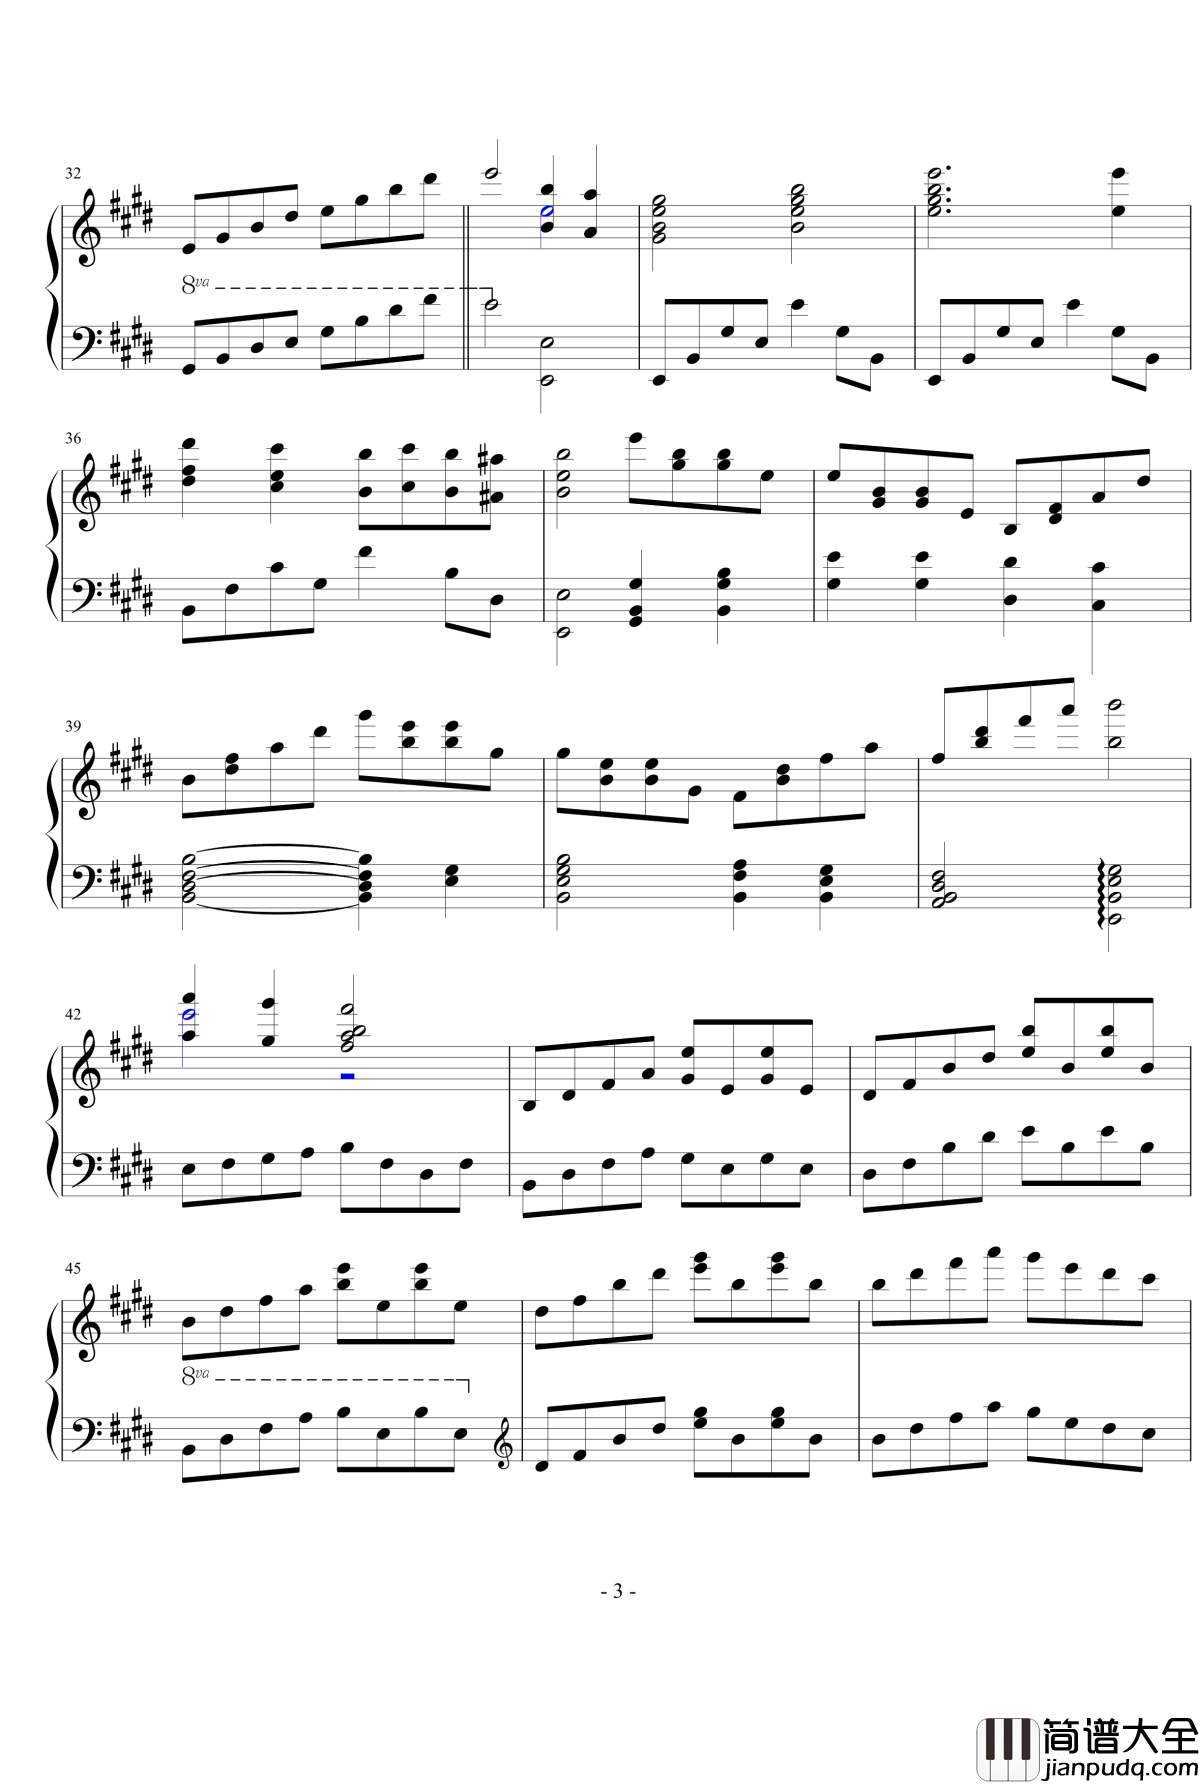 E大调第八练习曲钢琴谱_PARROT186